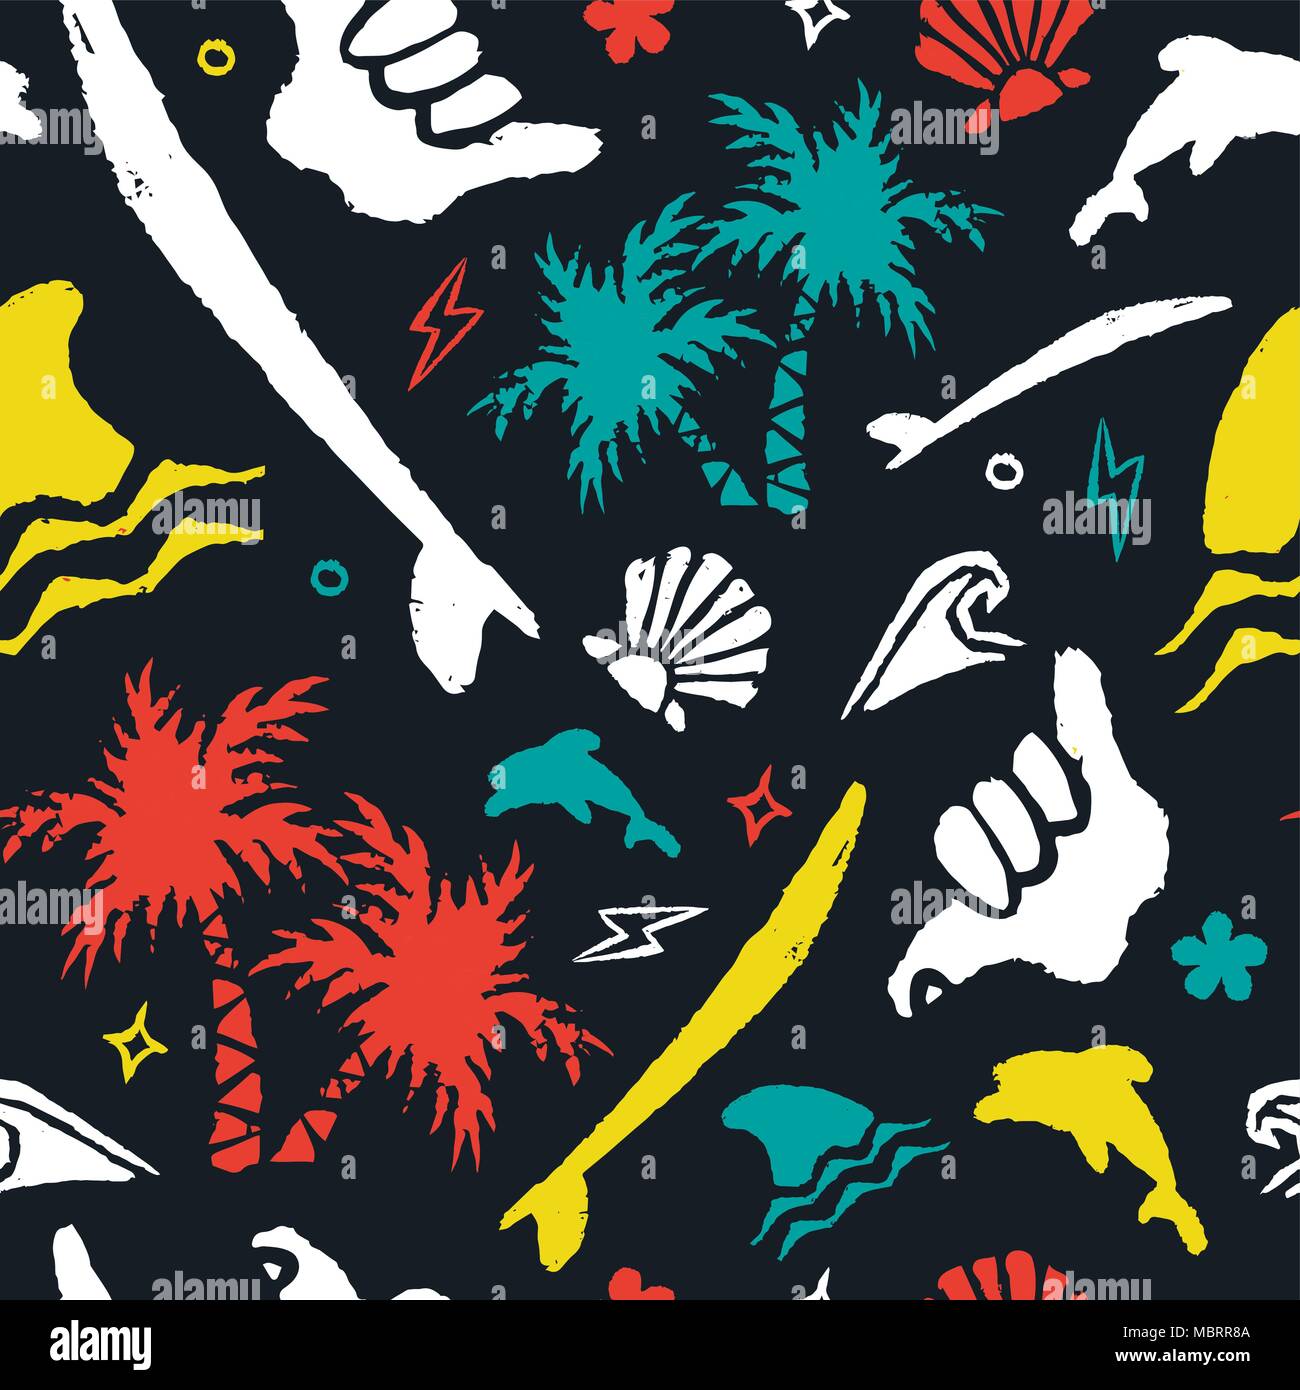 Surfez avec motif transparente texture grunge fait main icons et doodles. Décoration colorée surfer tropical beach palm tree, surfboard, requin, shaka han Illustration de Vecteur